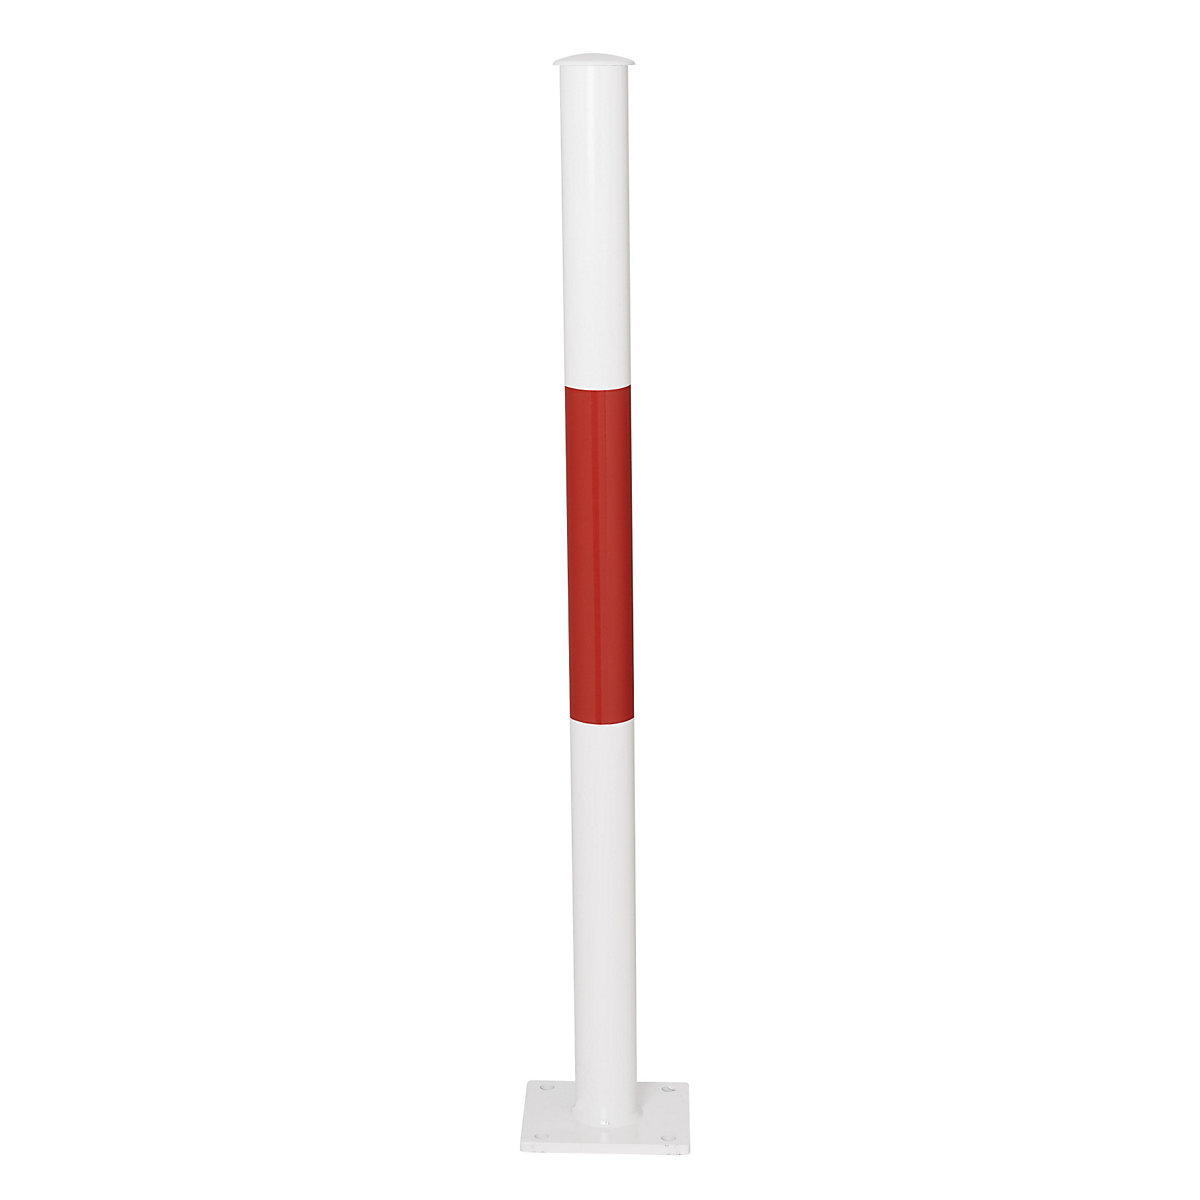 Barrière modulaire, montant à cheviller au sol, coloris rouge / blanc-5